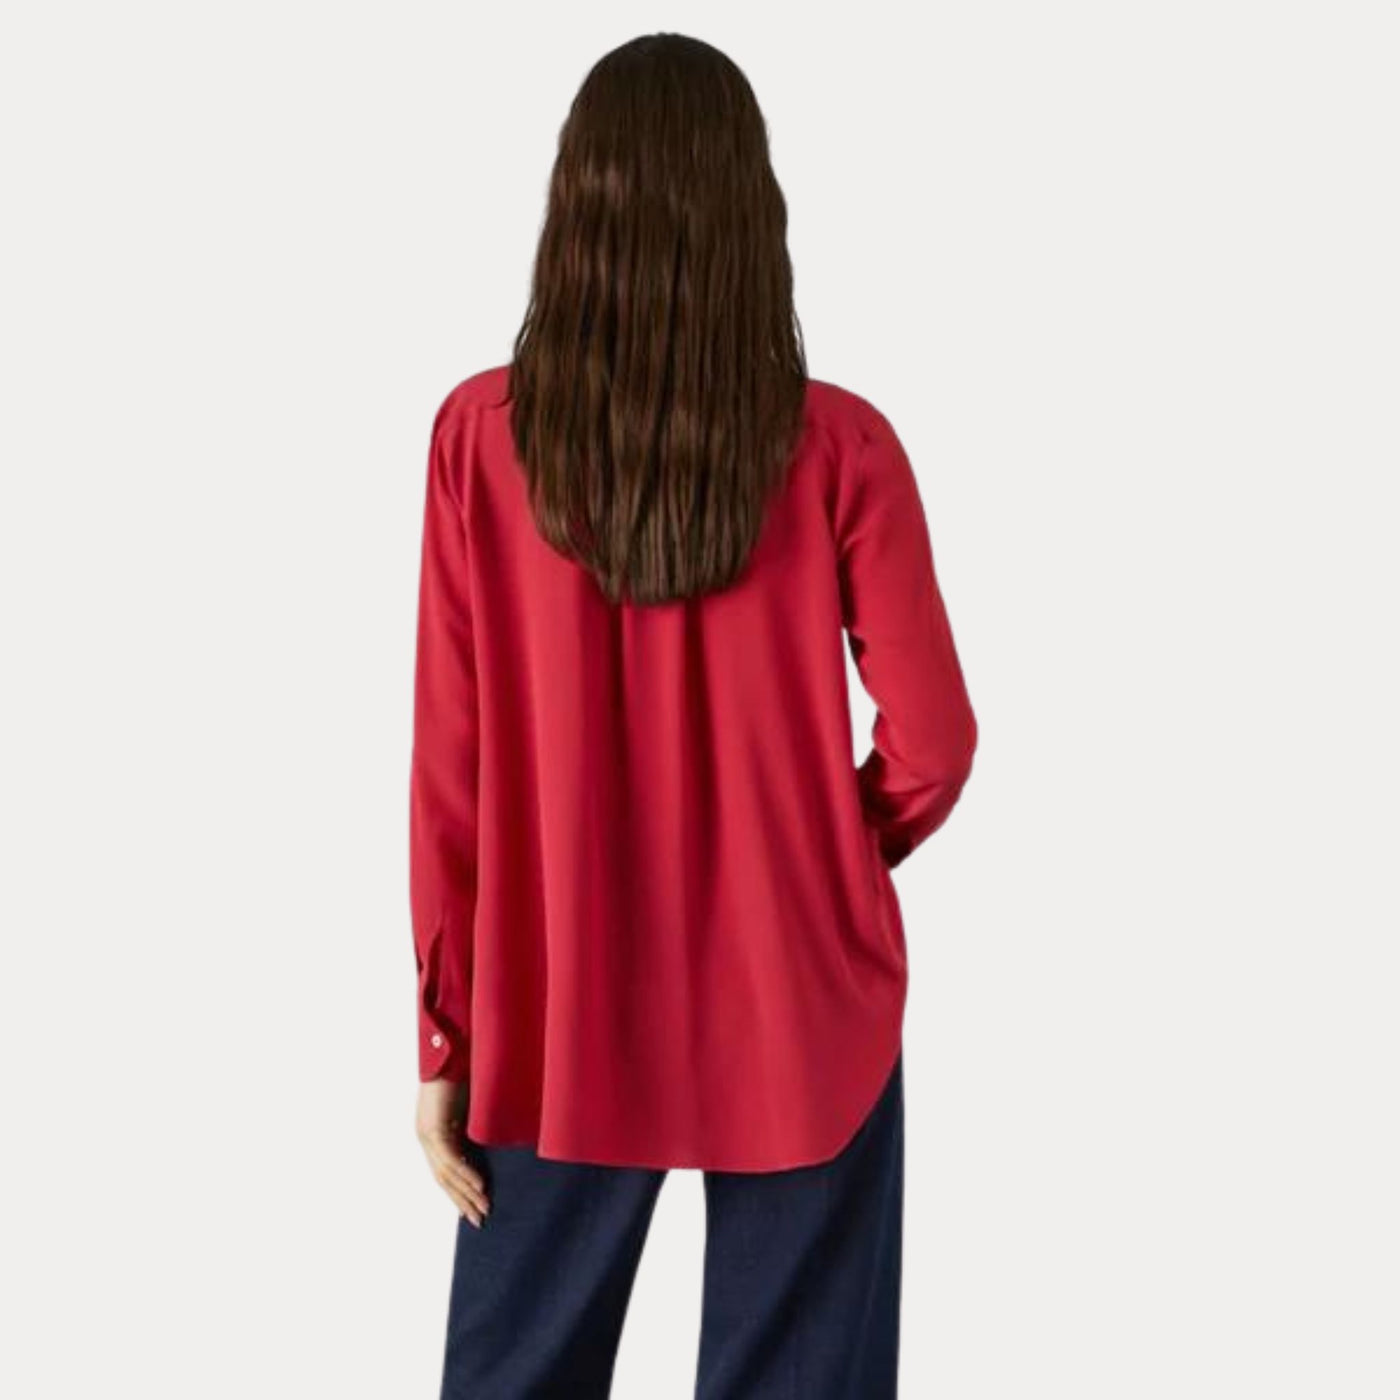 Camicia da donna rossa firmata Marella vista retro su modella